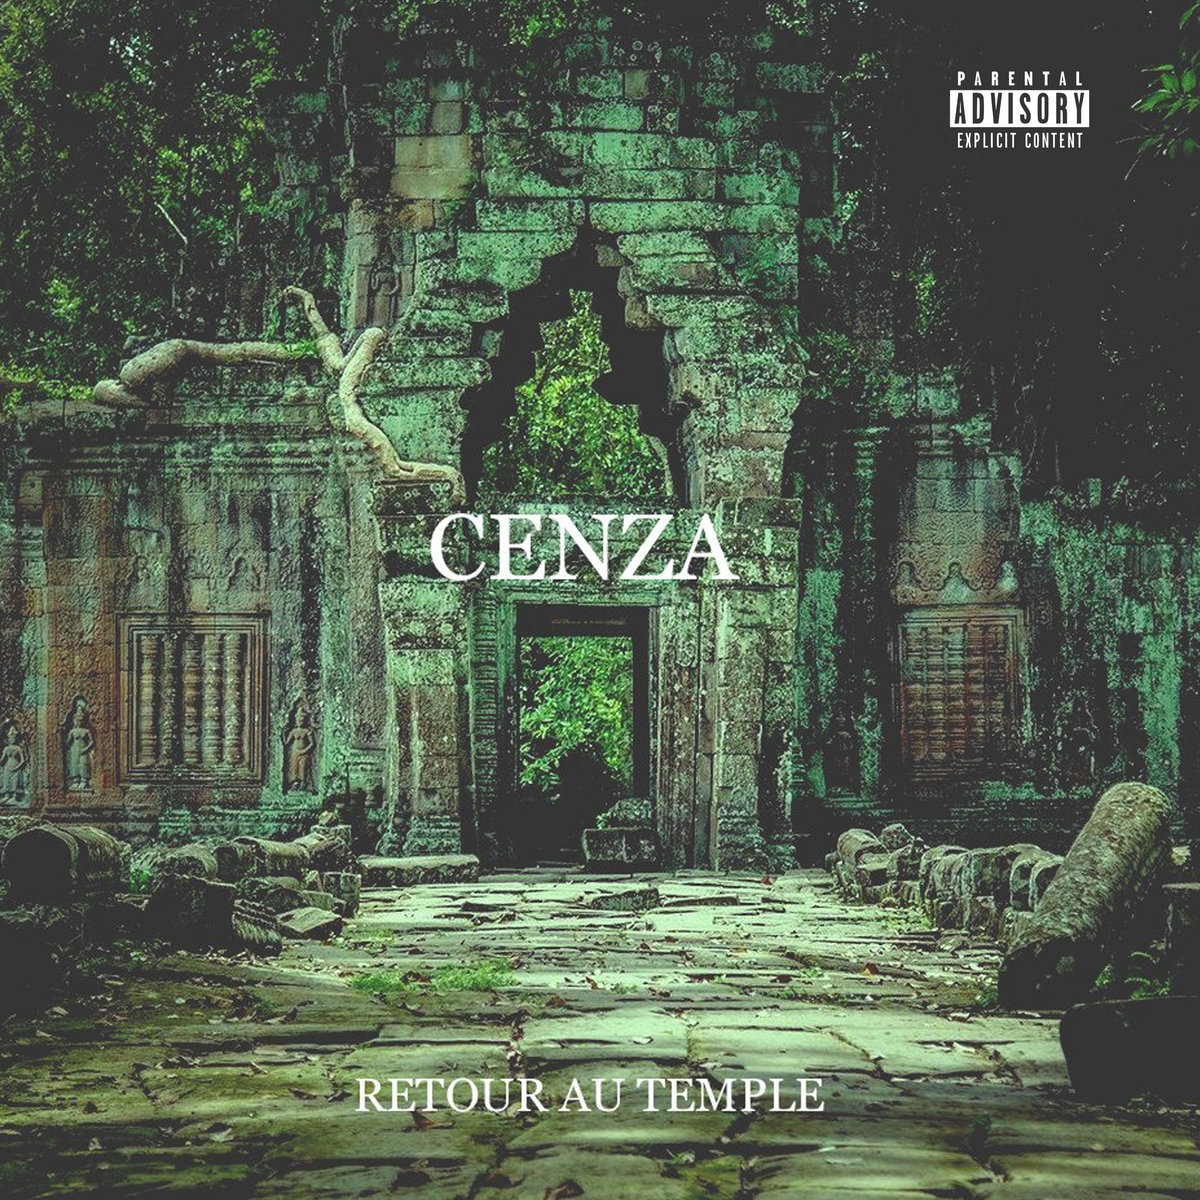 Album CD Cenza "Retour au temple" de l'uzine sur Scredboutique.com